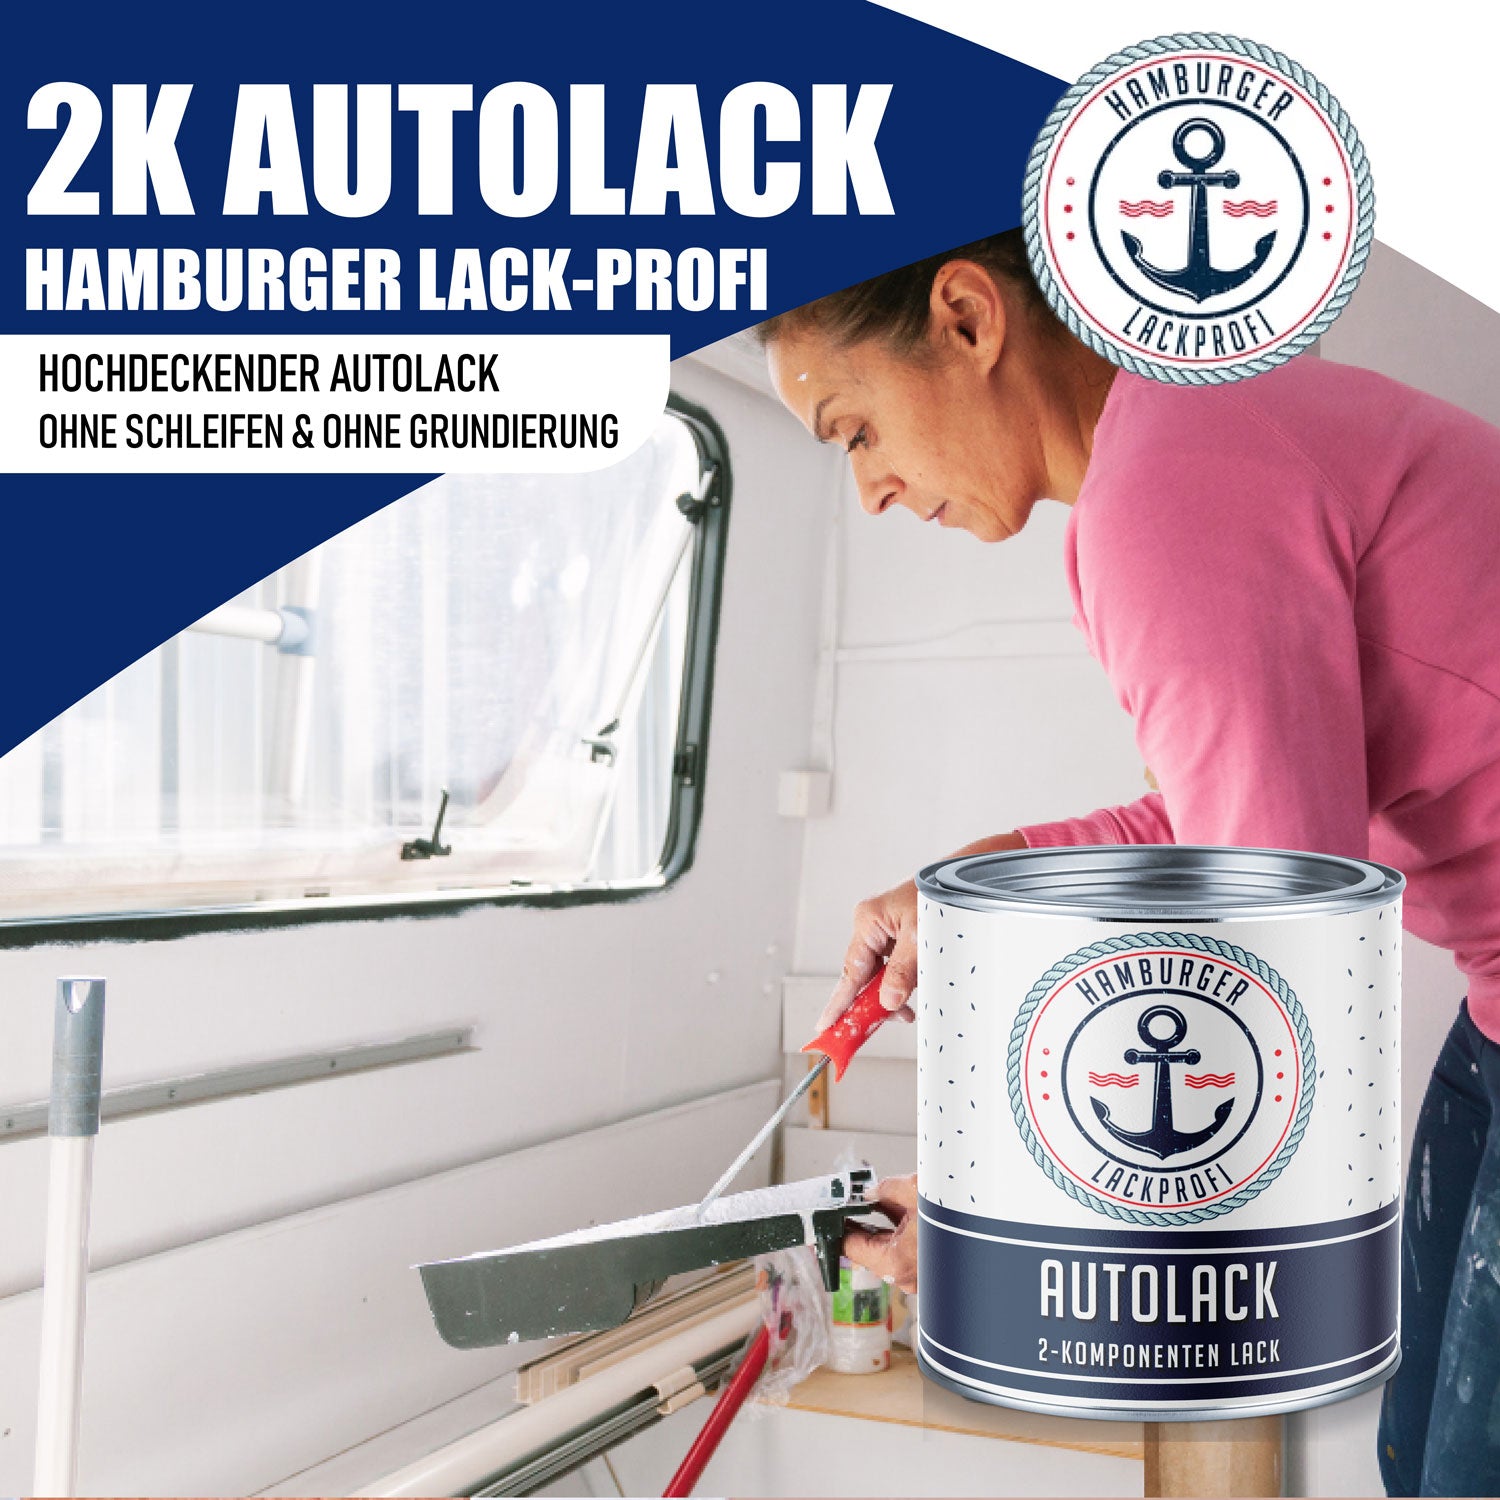 Hamburger Lack-Profi 2K Autolack Brillantblau RAL 5007 - hochdeckend & rostschützend